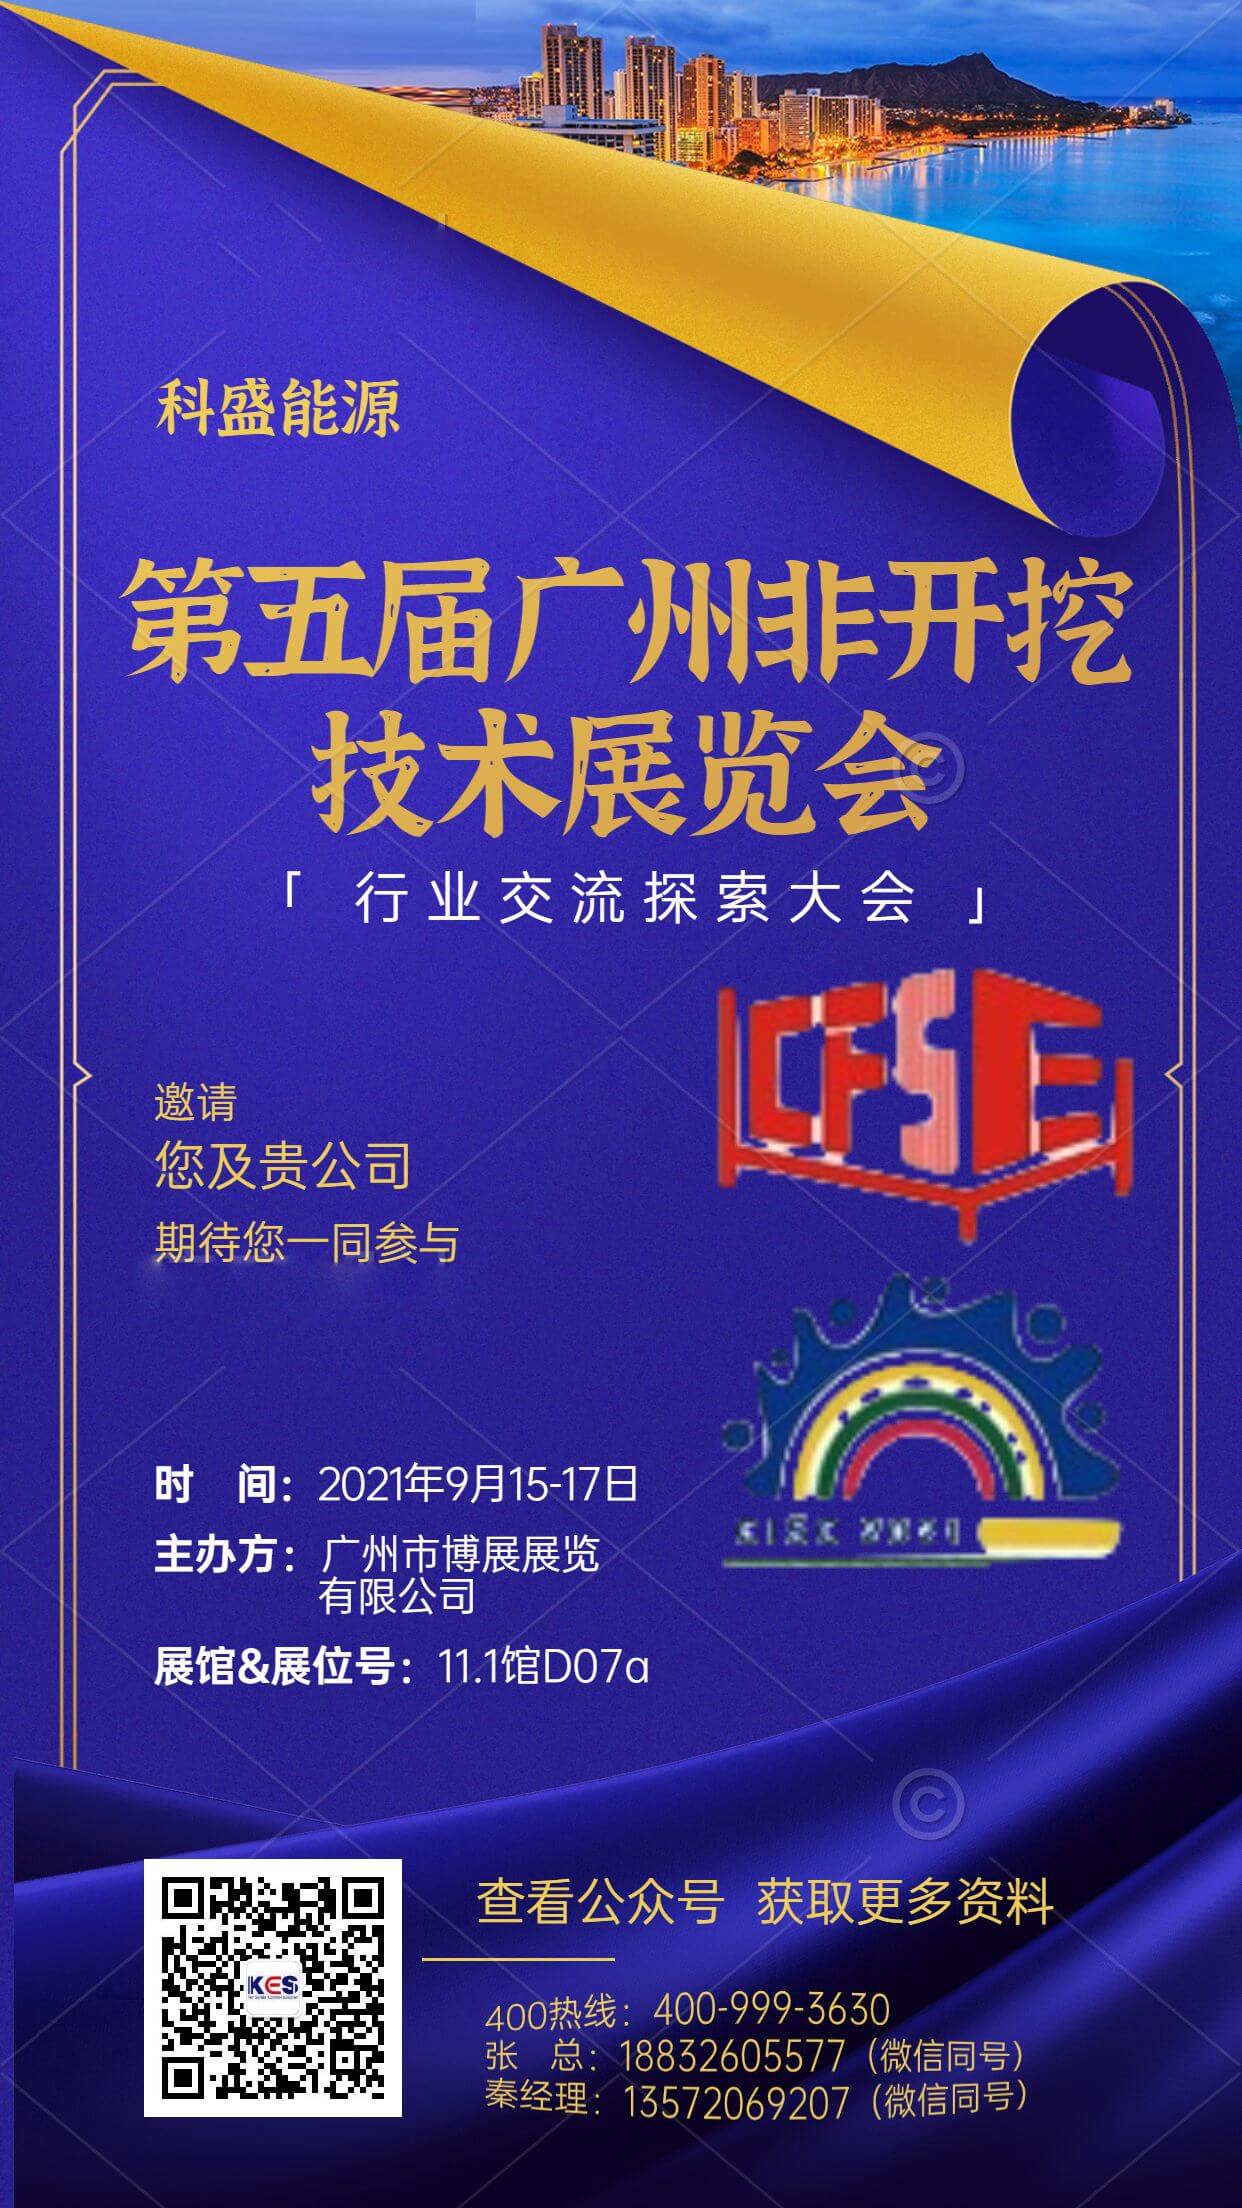 Приглашение | Приглашаем вас принять участие в пятом Гуанчжоу не раскопки технологии, Губка Город и